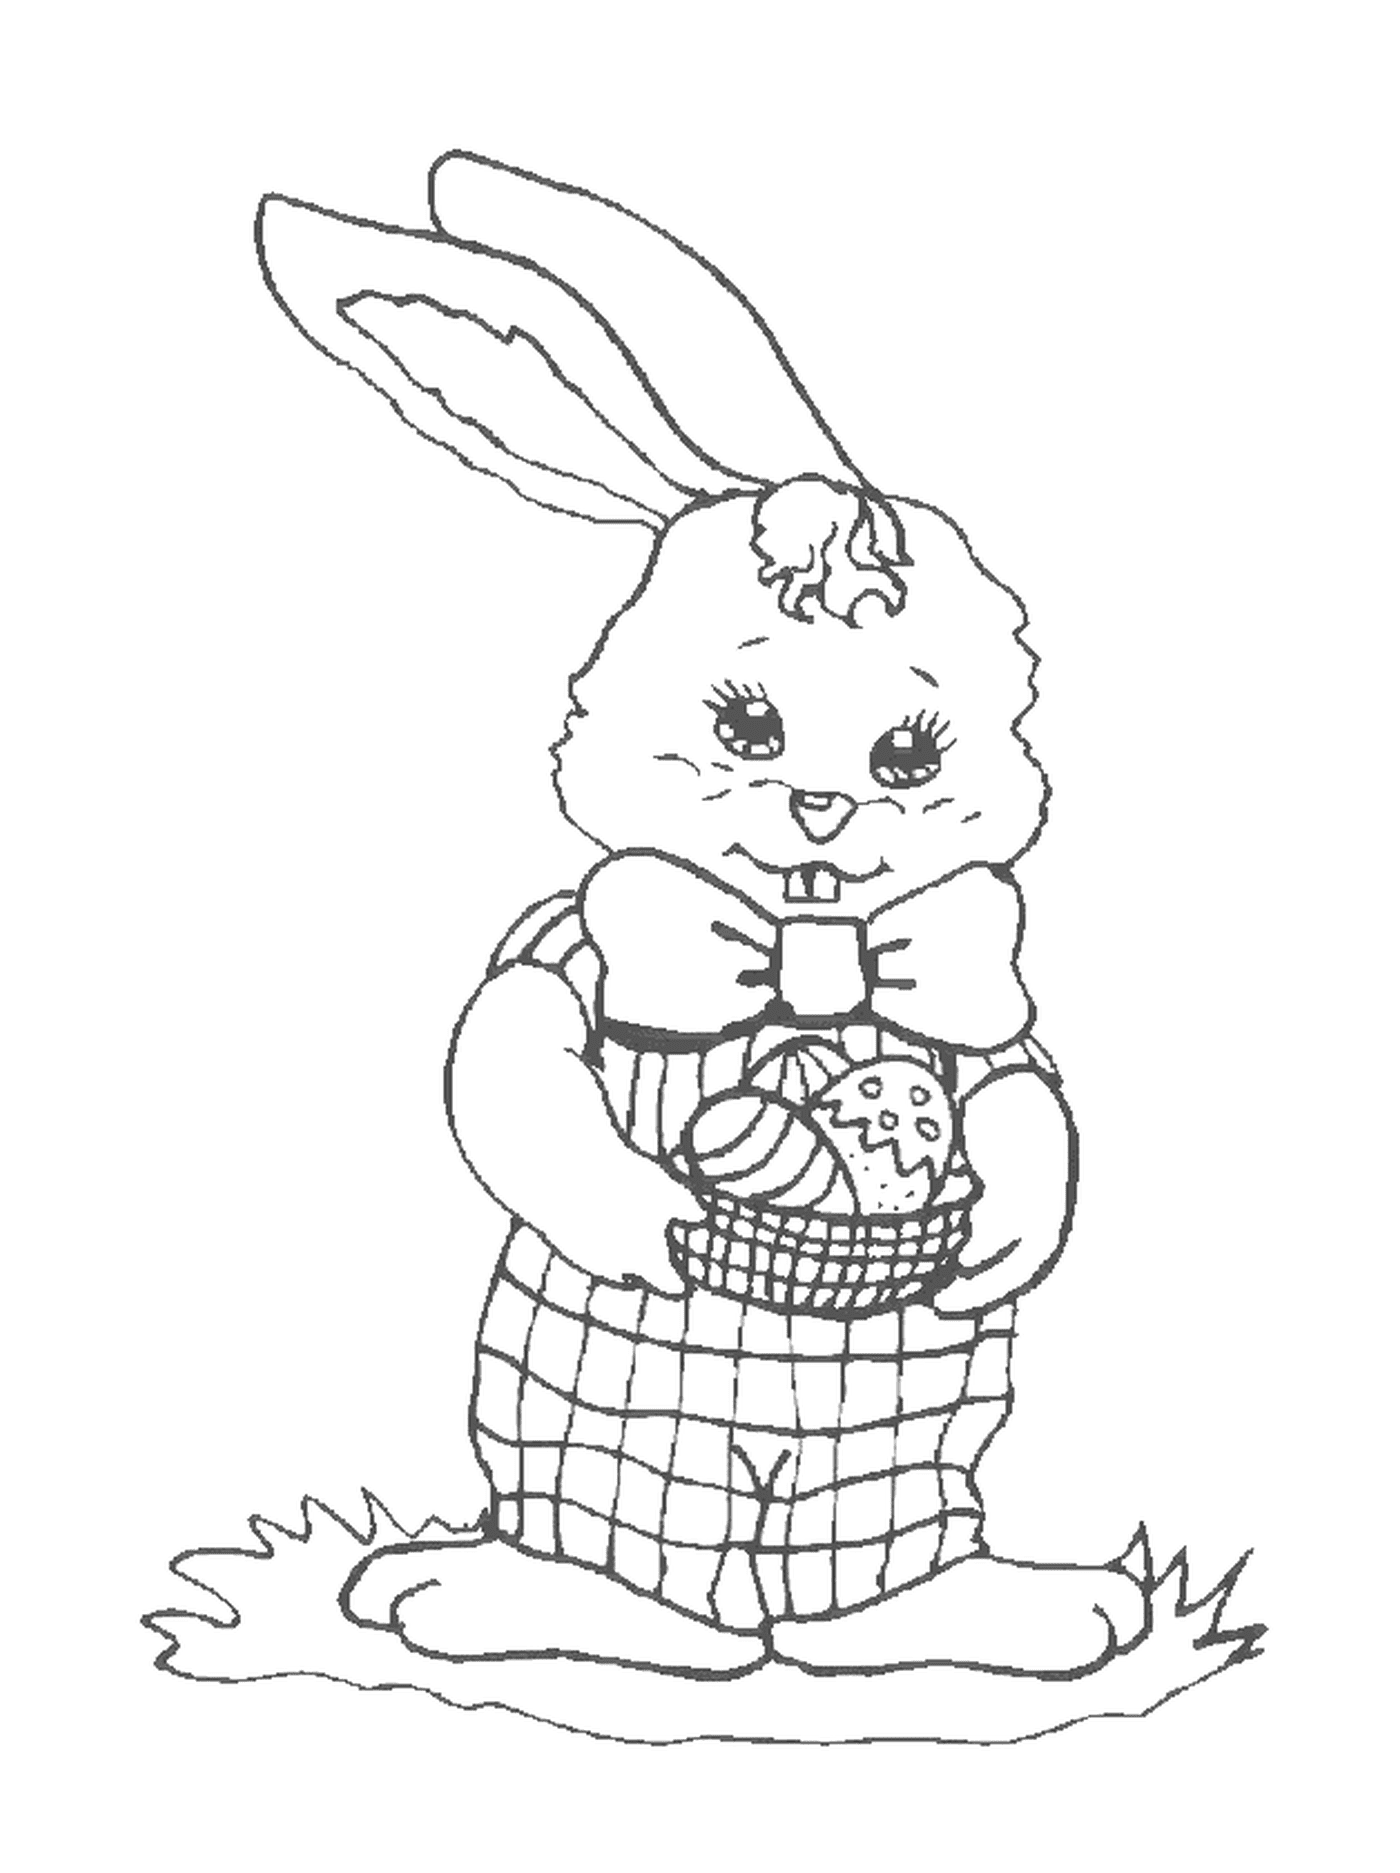  Rabbit with chocolates 